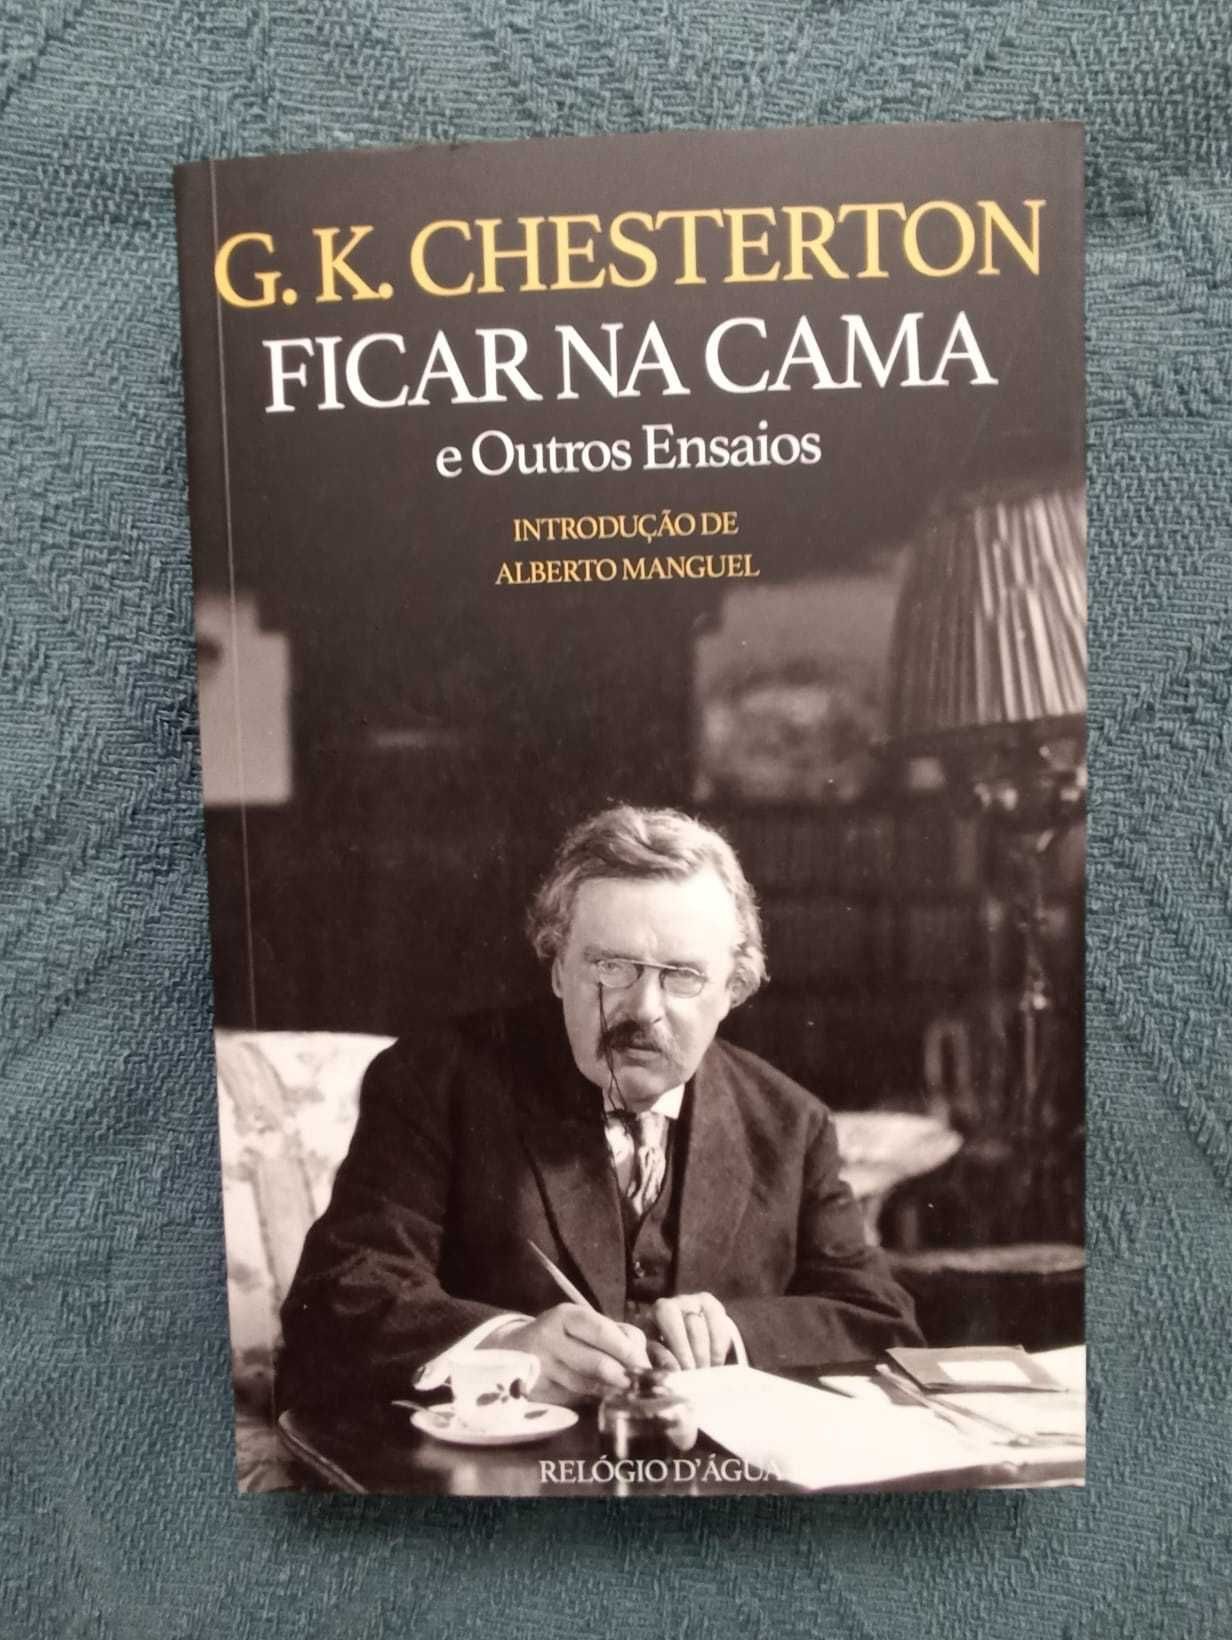 [LIVRO] Ficar na cama e outros ensaios, G. K. Chesterton